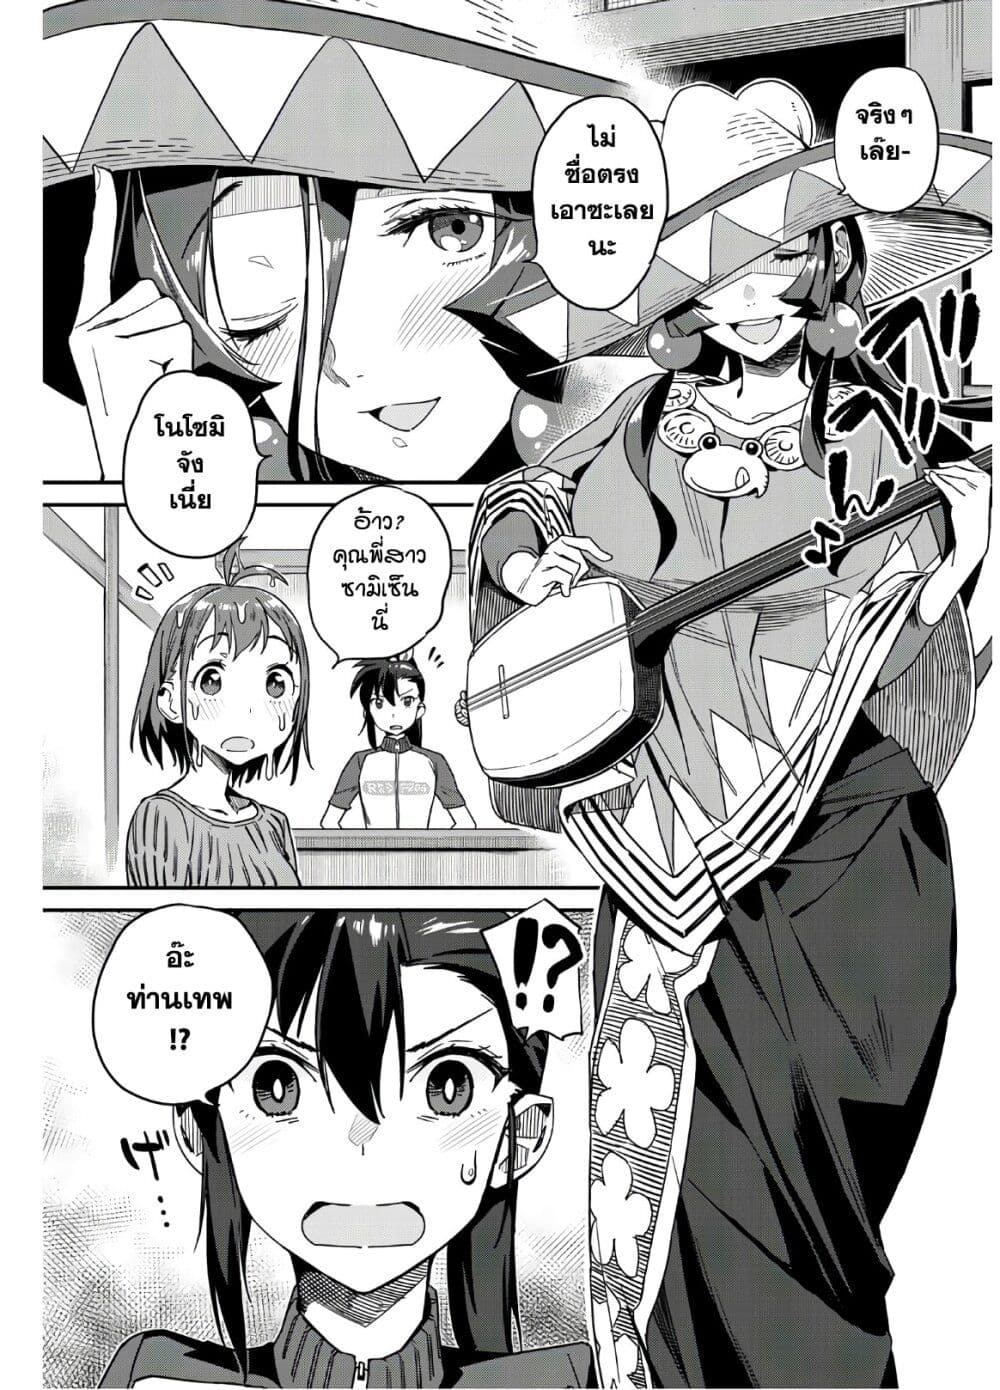 Youkai Izakaya non Bere ke - หน้า 16